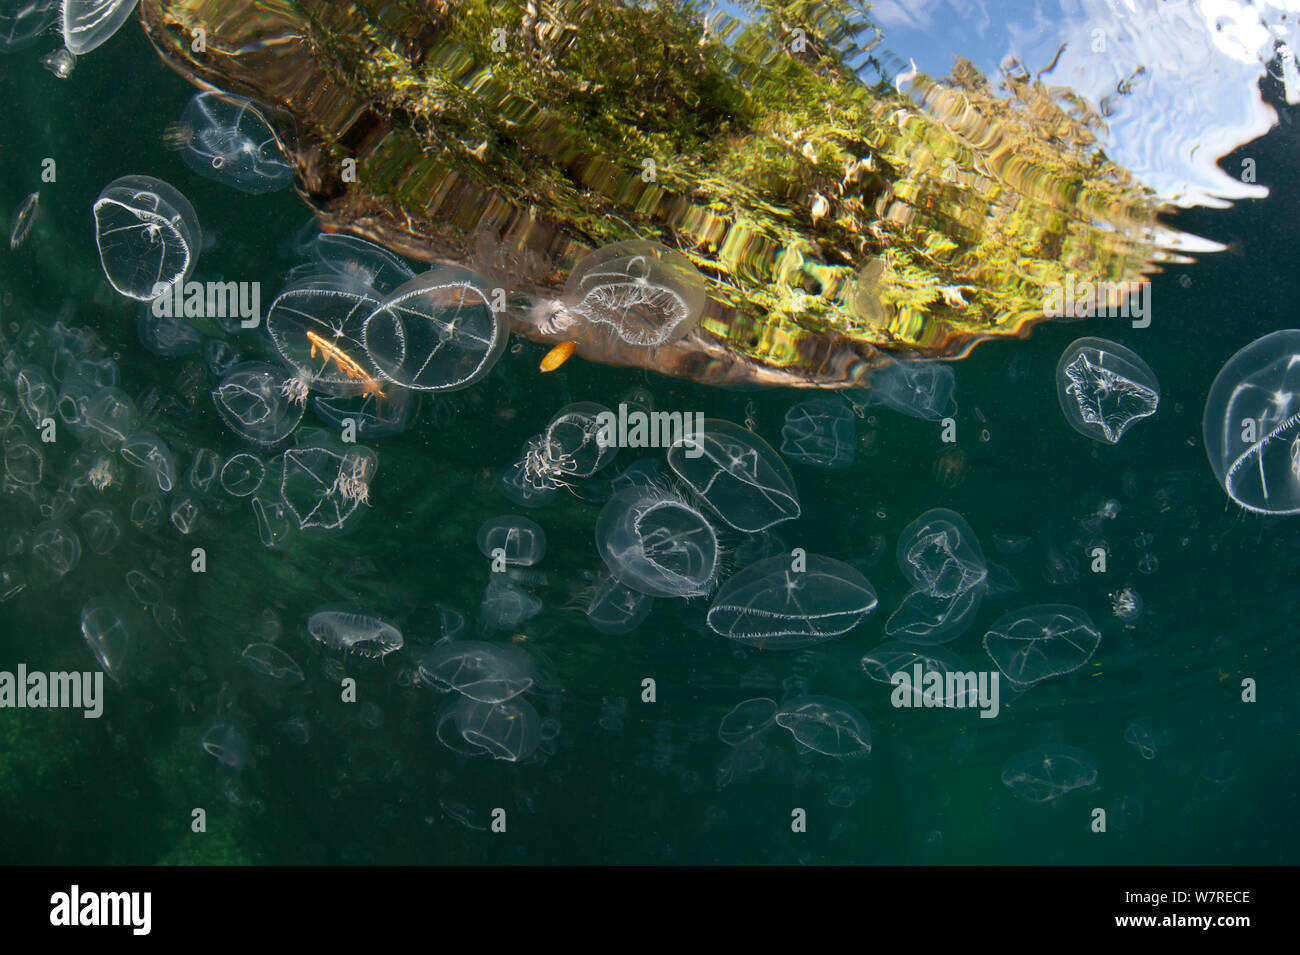 Montaggio misto di meduse, principalmente croce medusa (Earleria cellularia), in corrispondenza della superficie. Browning Pass, Port Hardy, Isola di Vancouver, British Columbia, Canada. Oceano Pacifico. Foto Stock